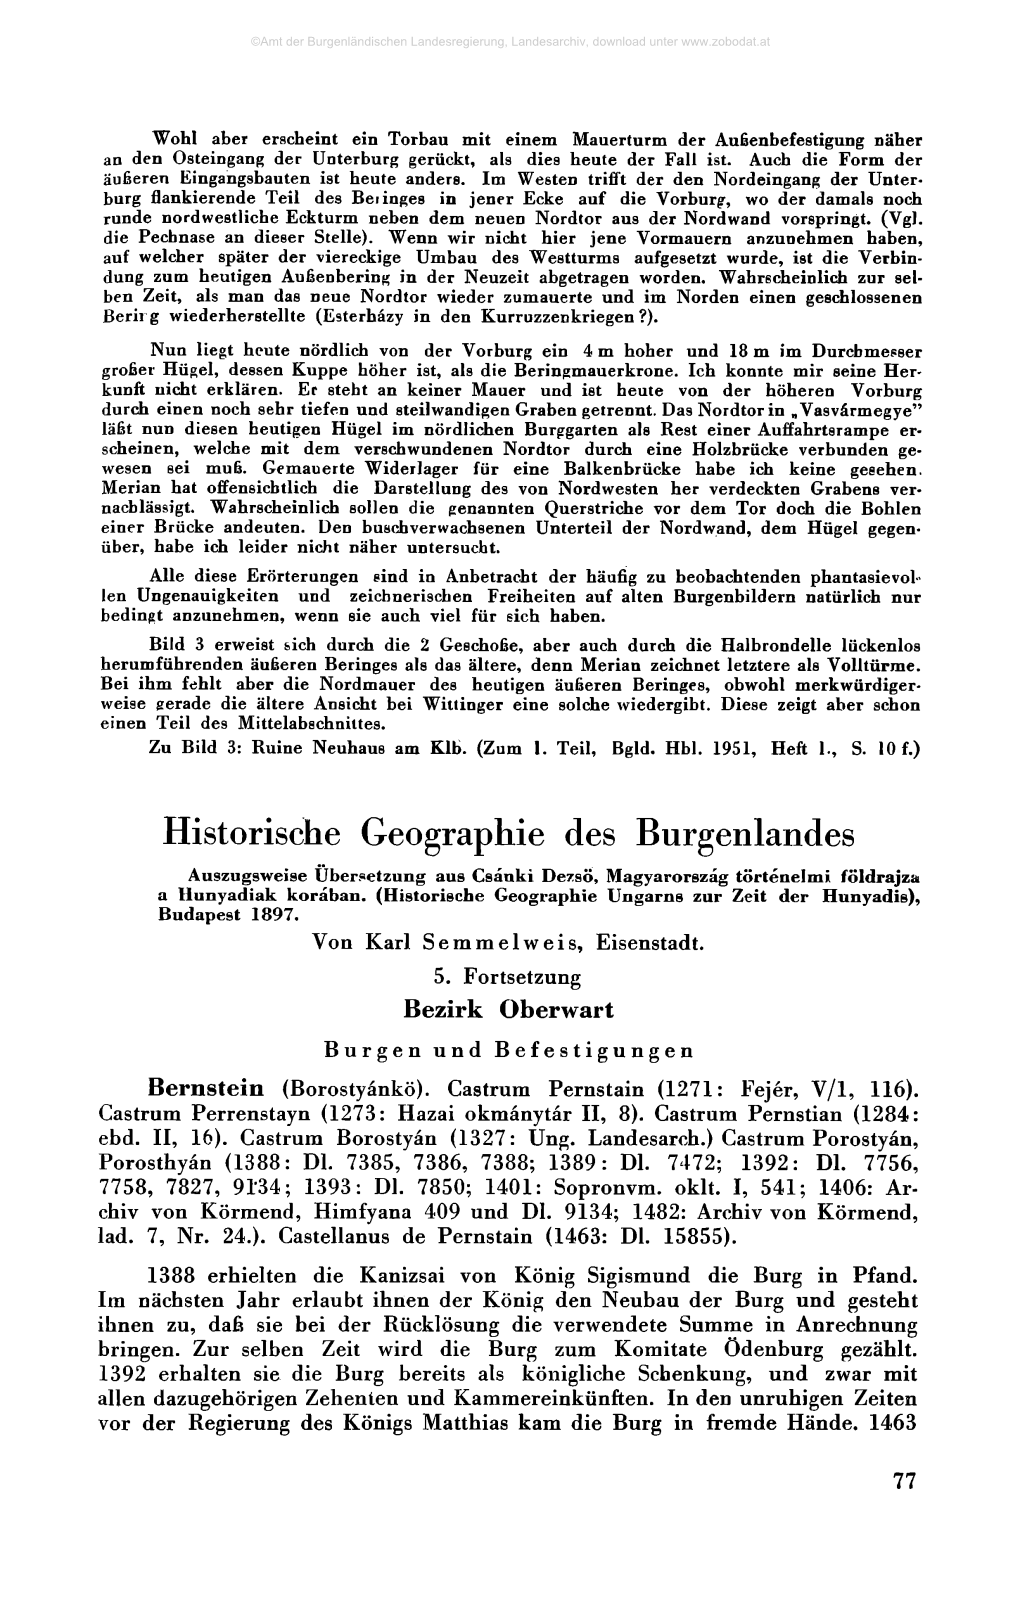 Historische Geographie Des Burgenlandes Bezirk Oberwart 77